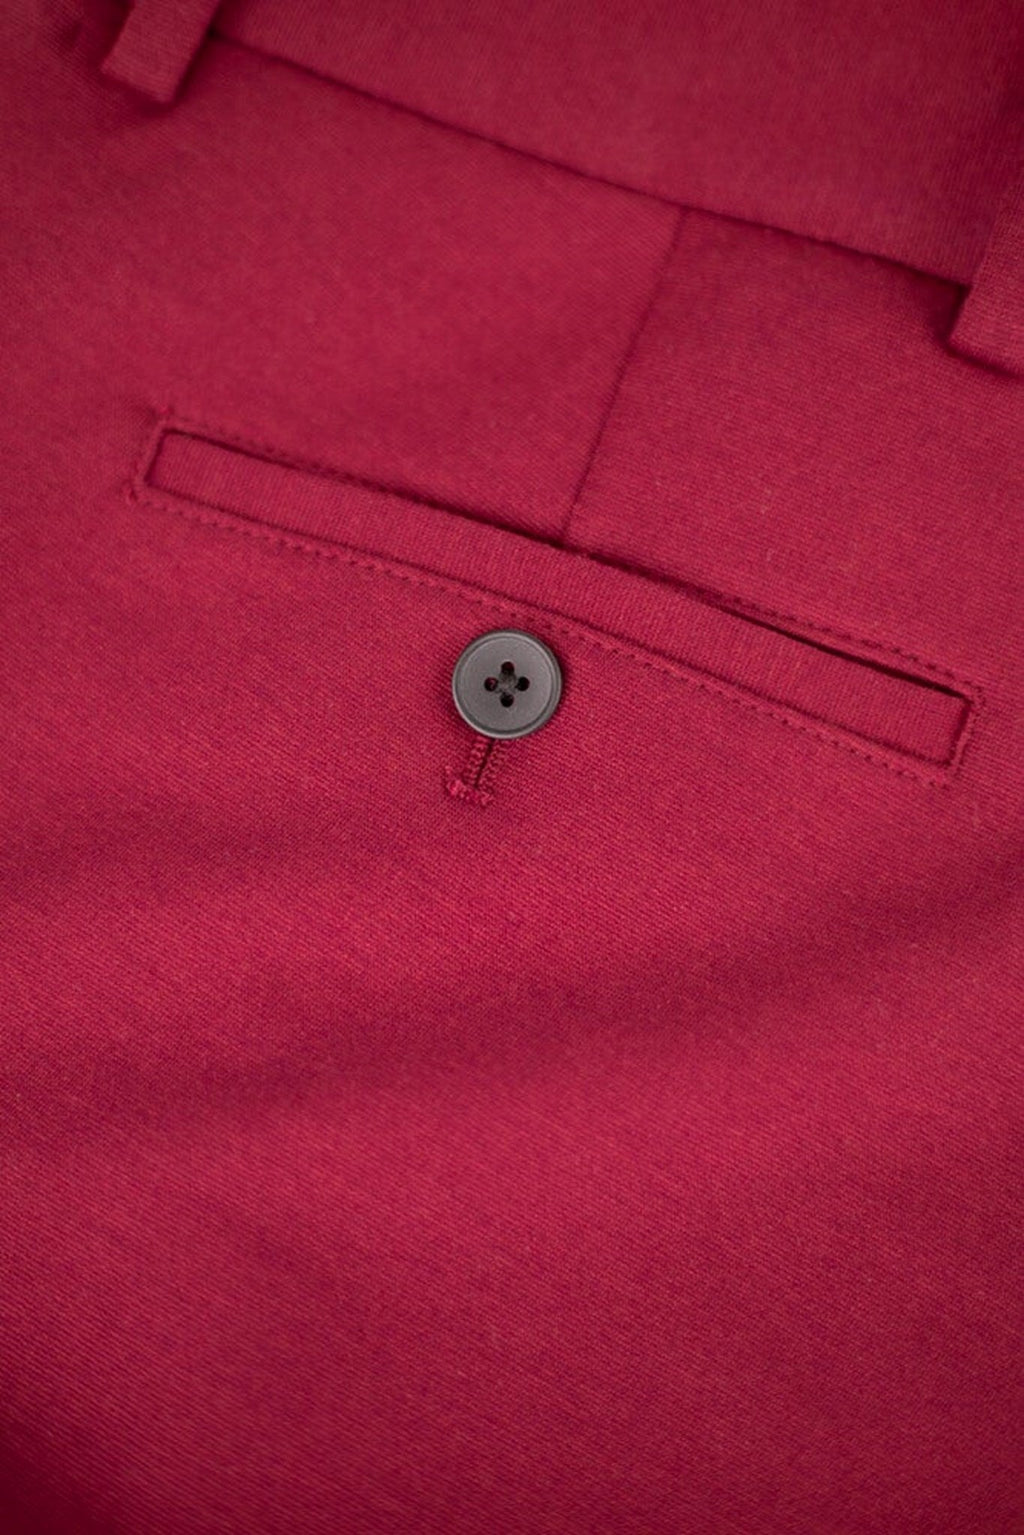 Originalne hlače izvedbe - tamno crvena